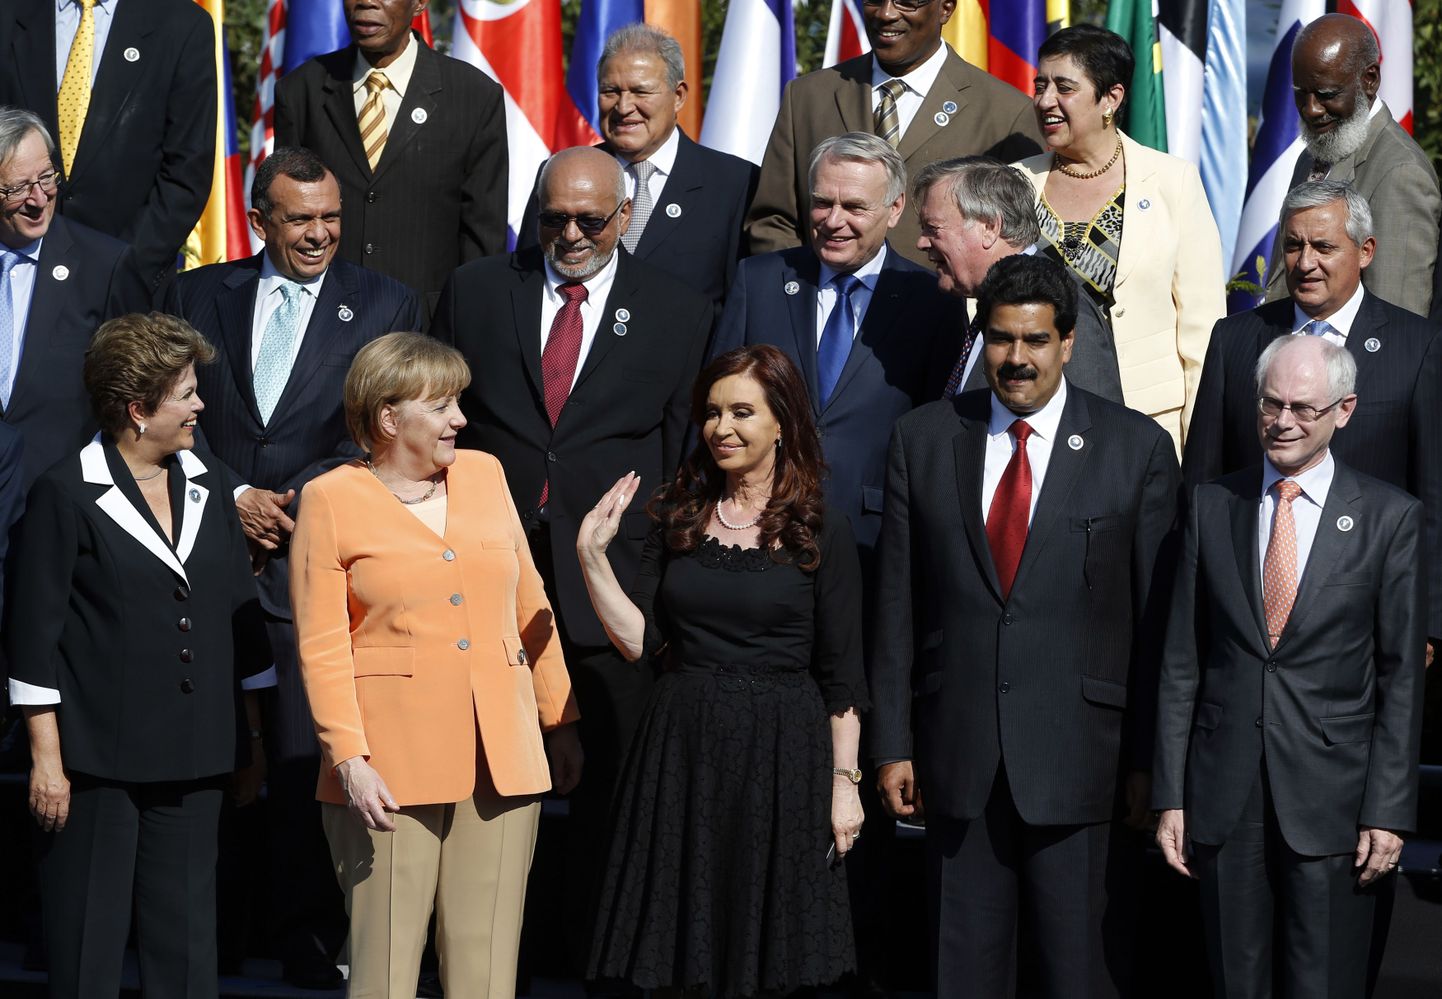 Lõuna-Ameerika ja Euroopa Liidu majandustippkohtumisel osalenud riigijuhid. Brasiilia president Dilma Rouseff on vasakul esireas